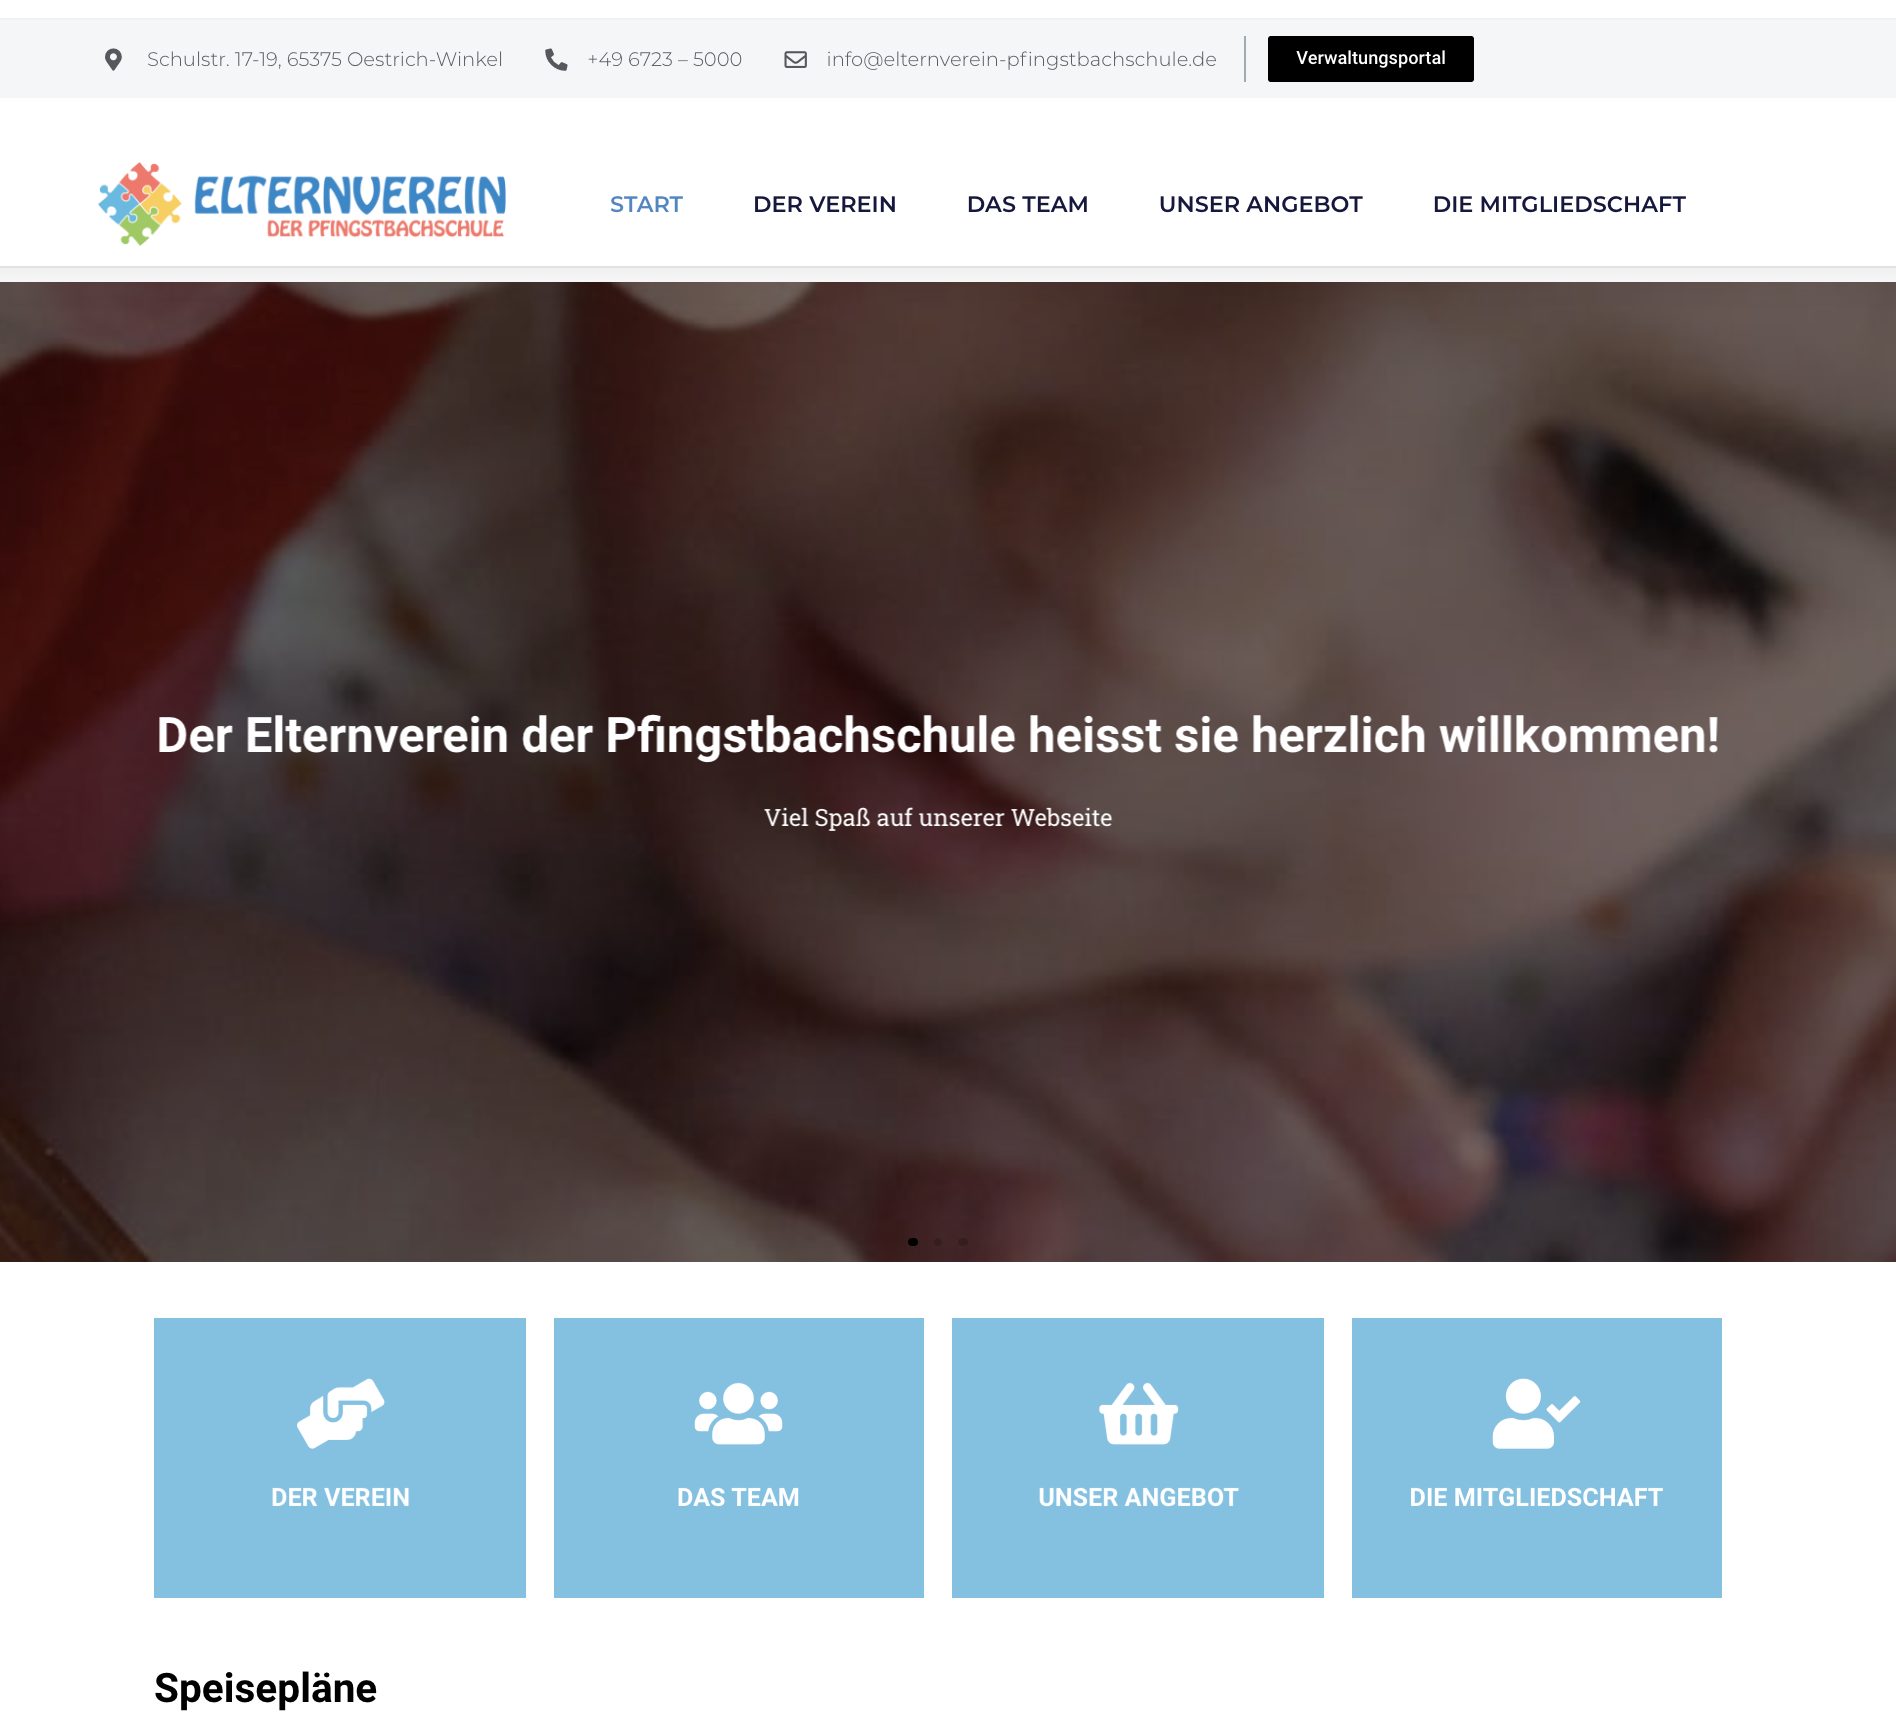 Elternverein-Webseite mit Willkommensgruß.